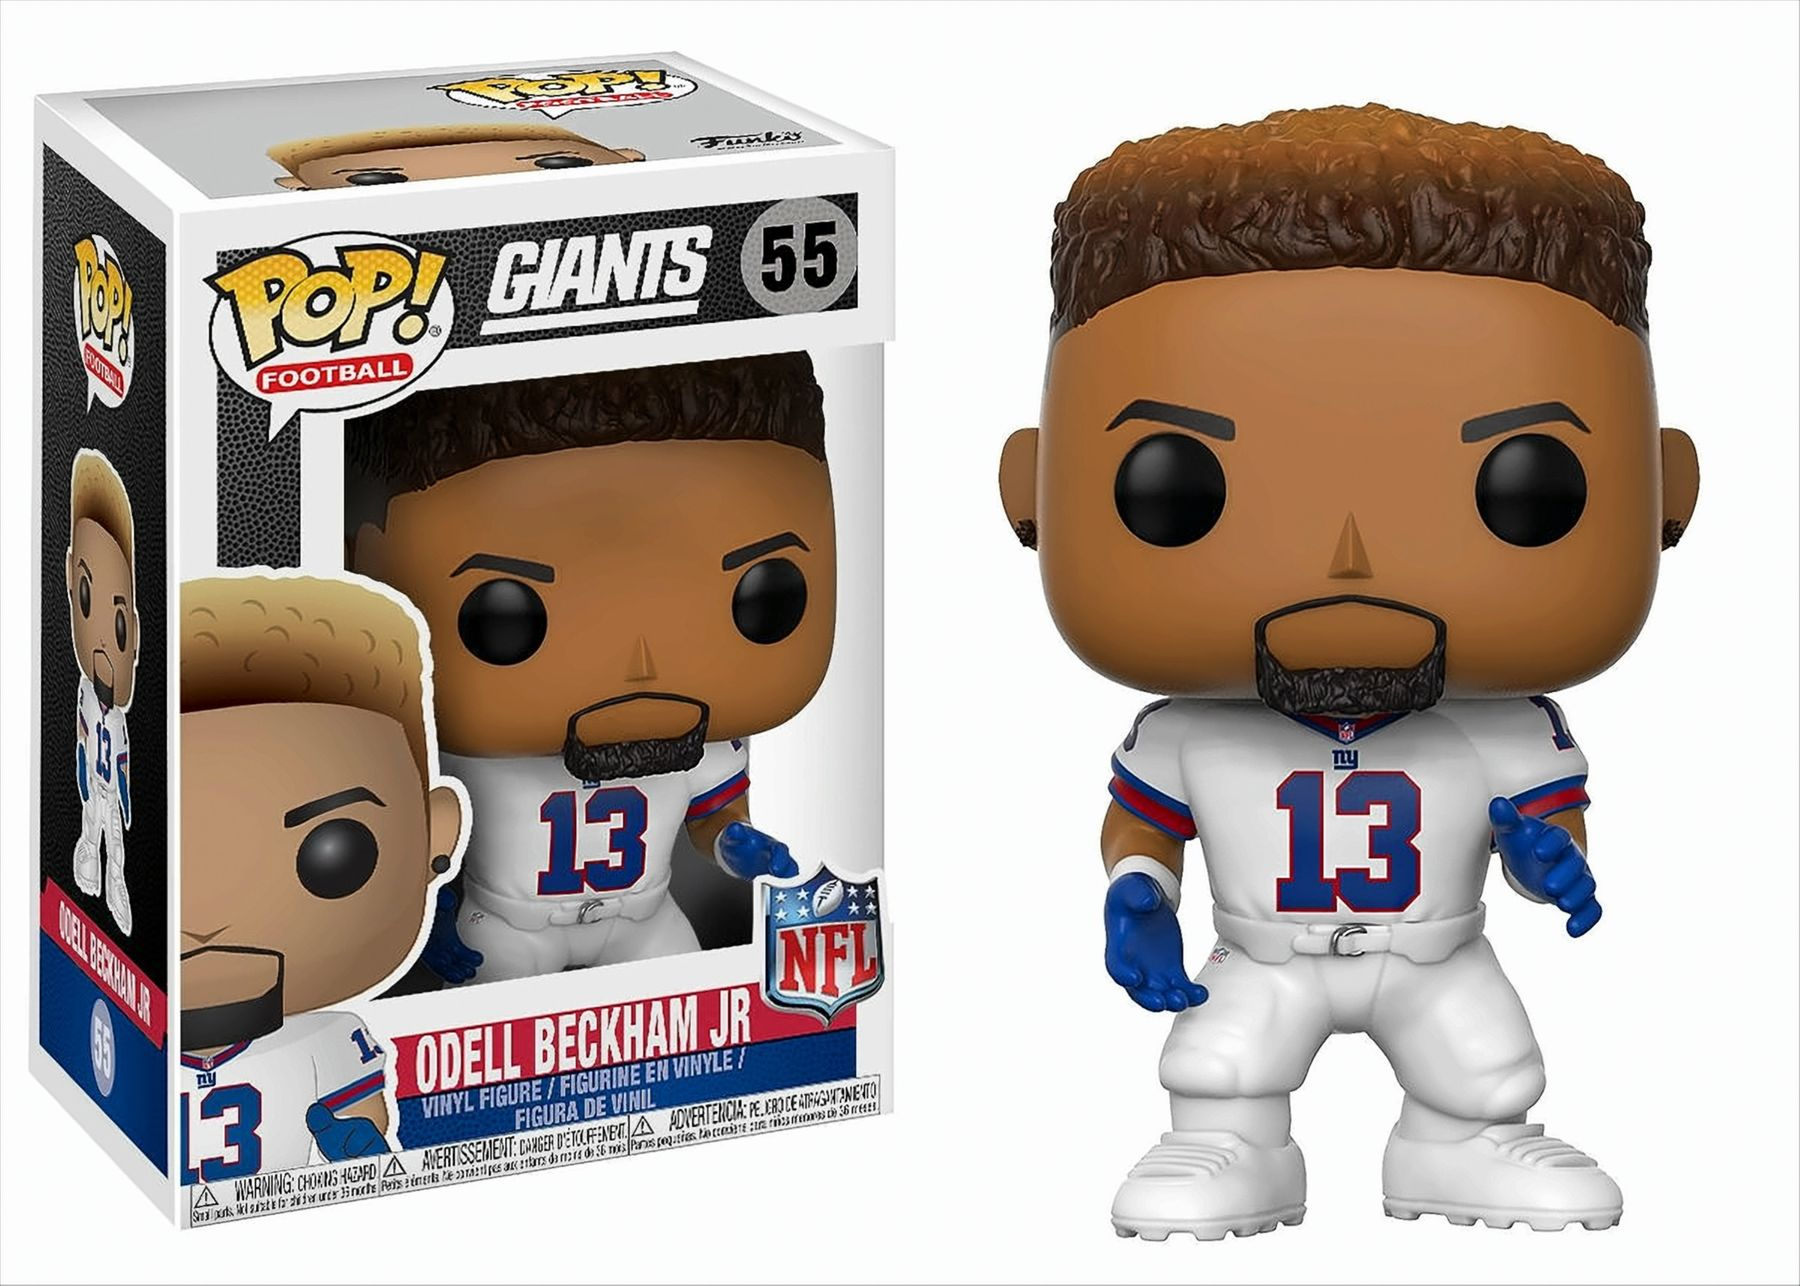 Funko POP Football NFL Beckham Odell Jr. Giants